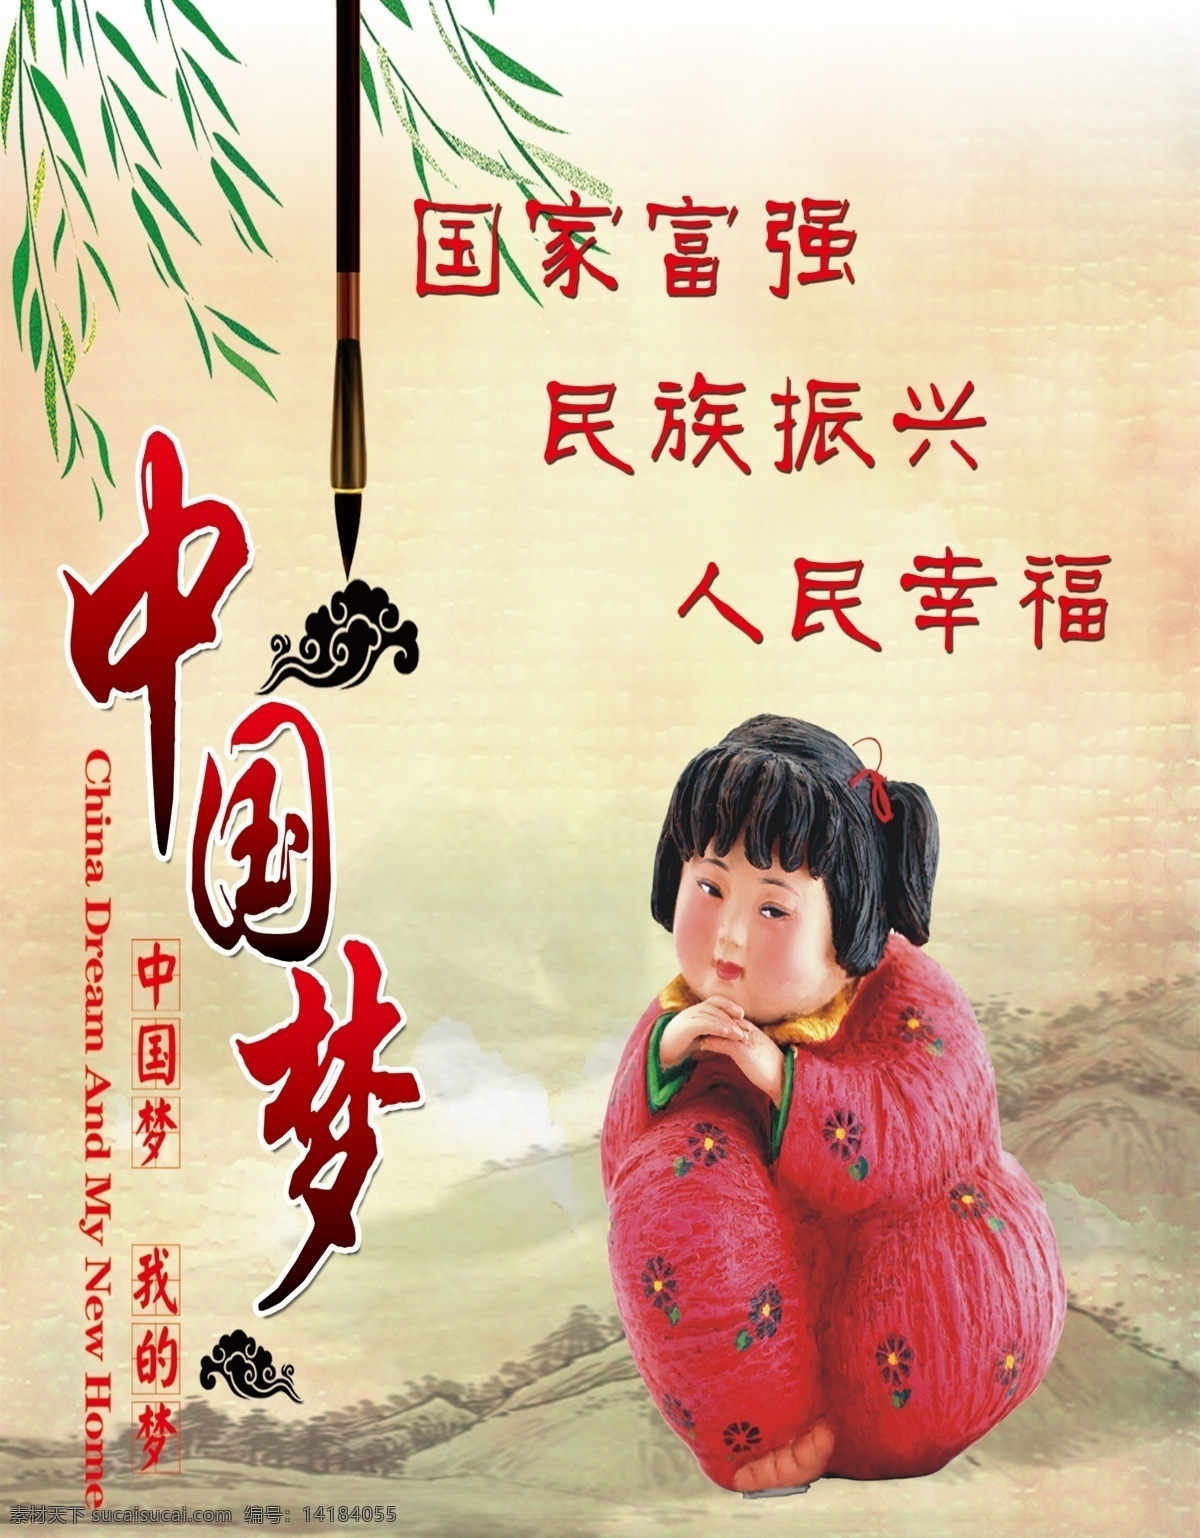 创城展板 国家富强 民族振兴 人民幸福 中国娃娃 中国梦展板 展板设计 展板模板